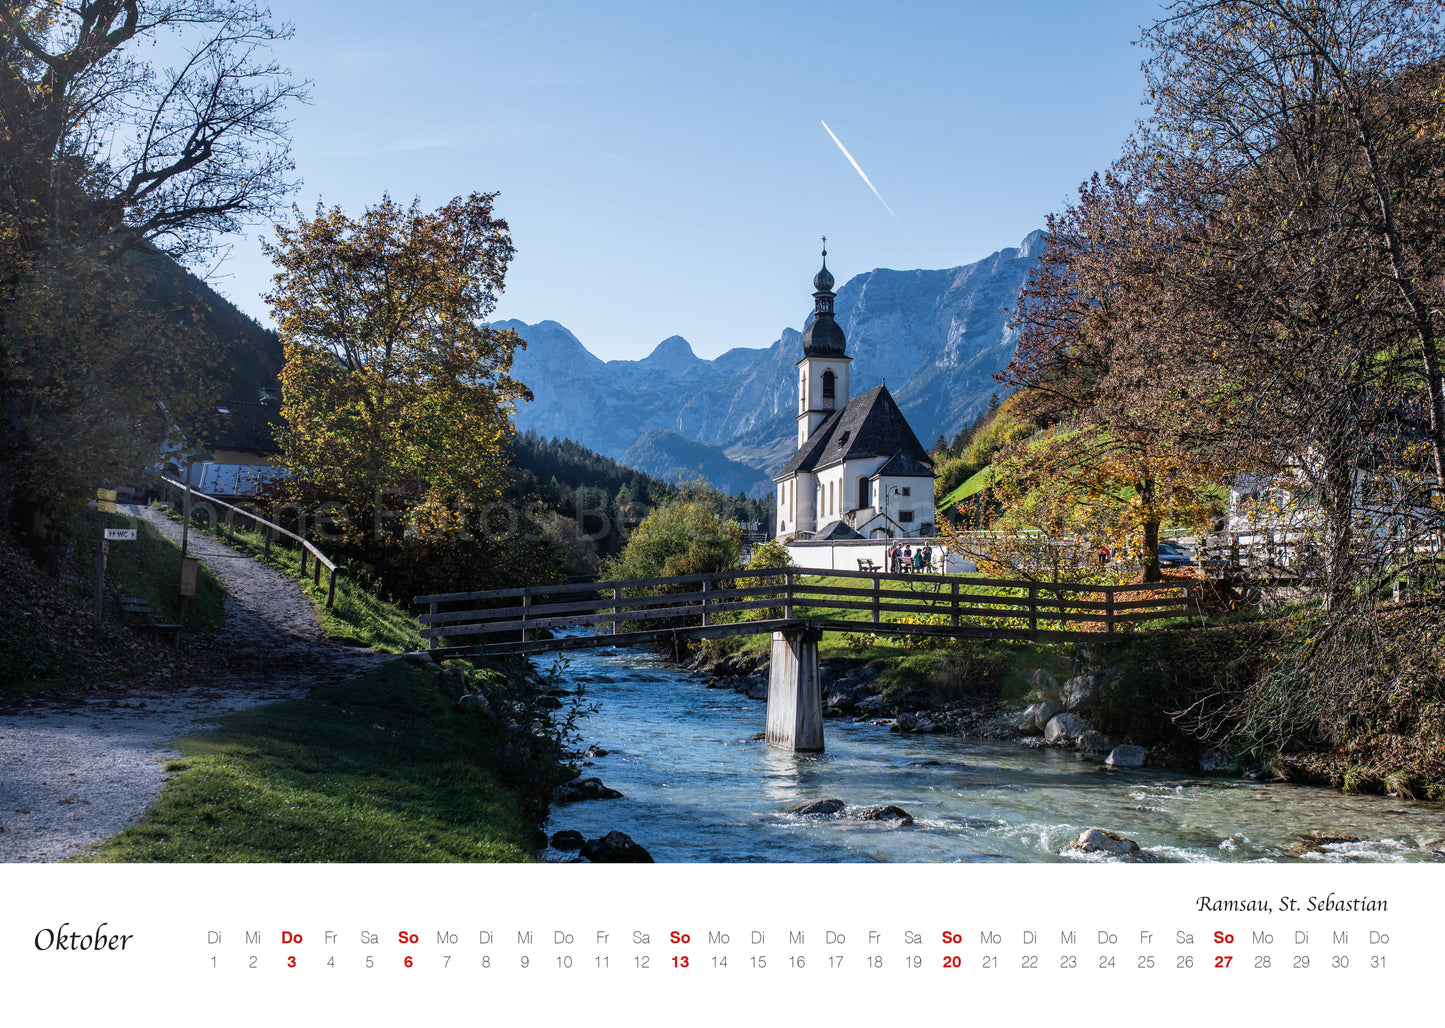 Wand Kalender Berchtesgaden 2024